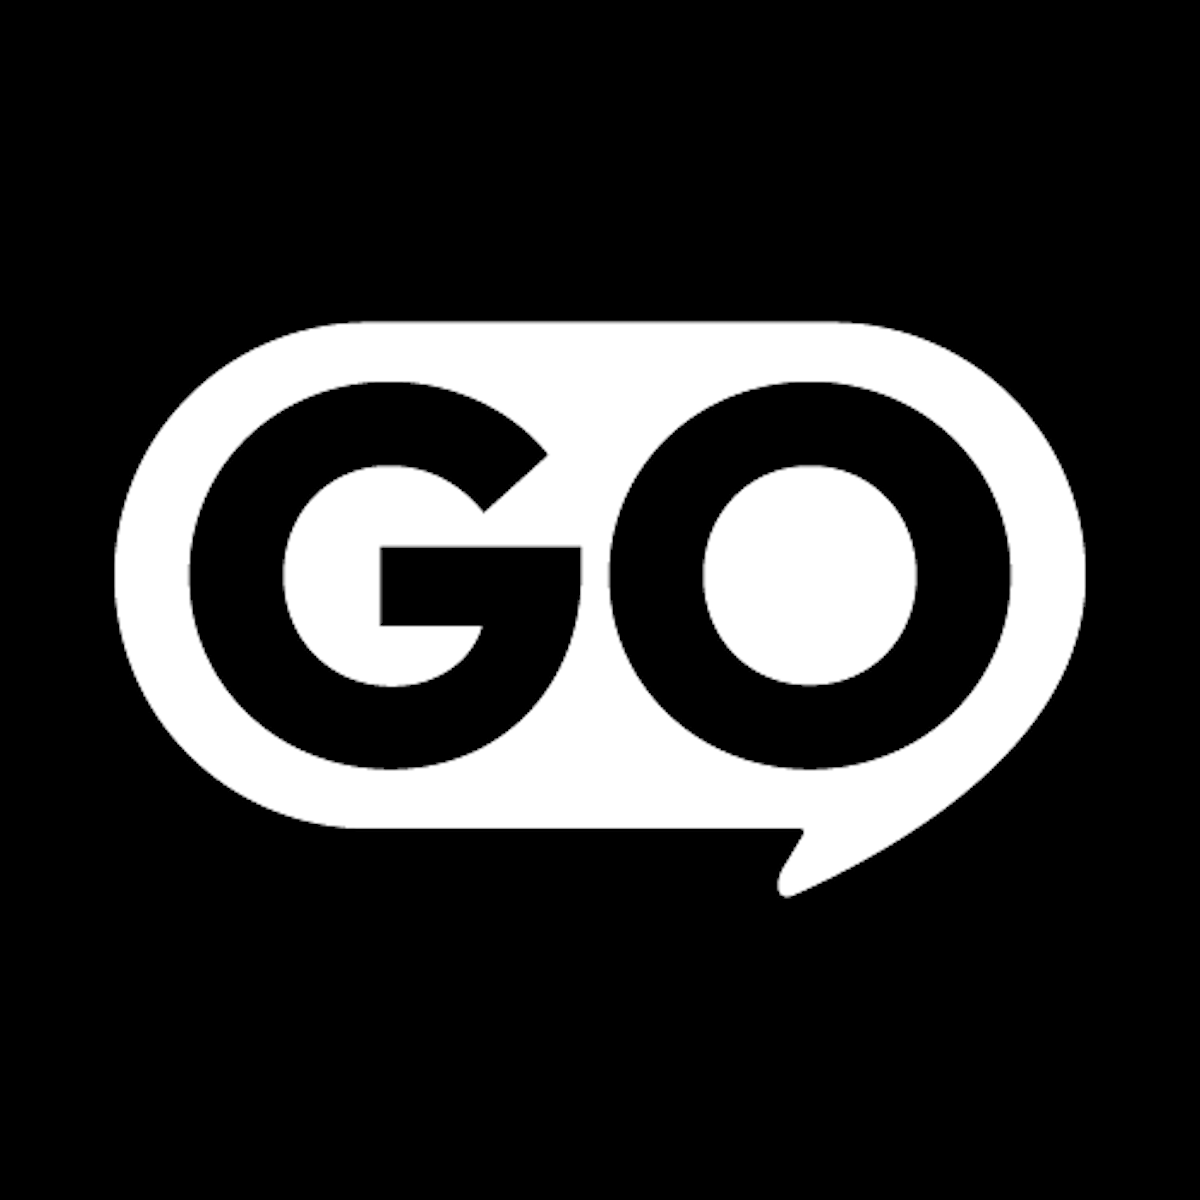 GOtext ‑ Marketing tramite SMS